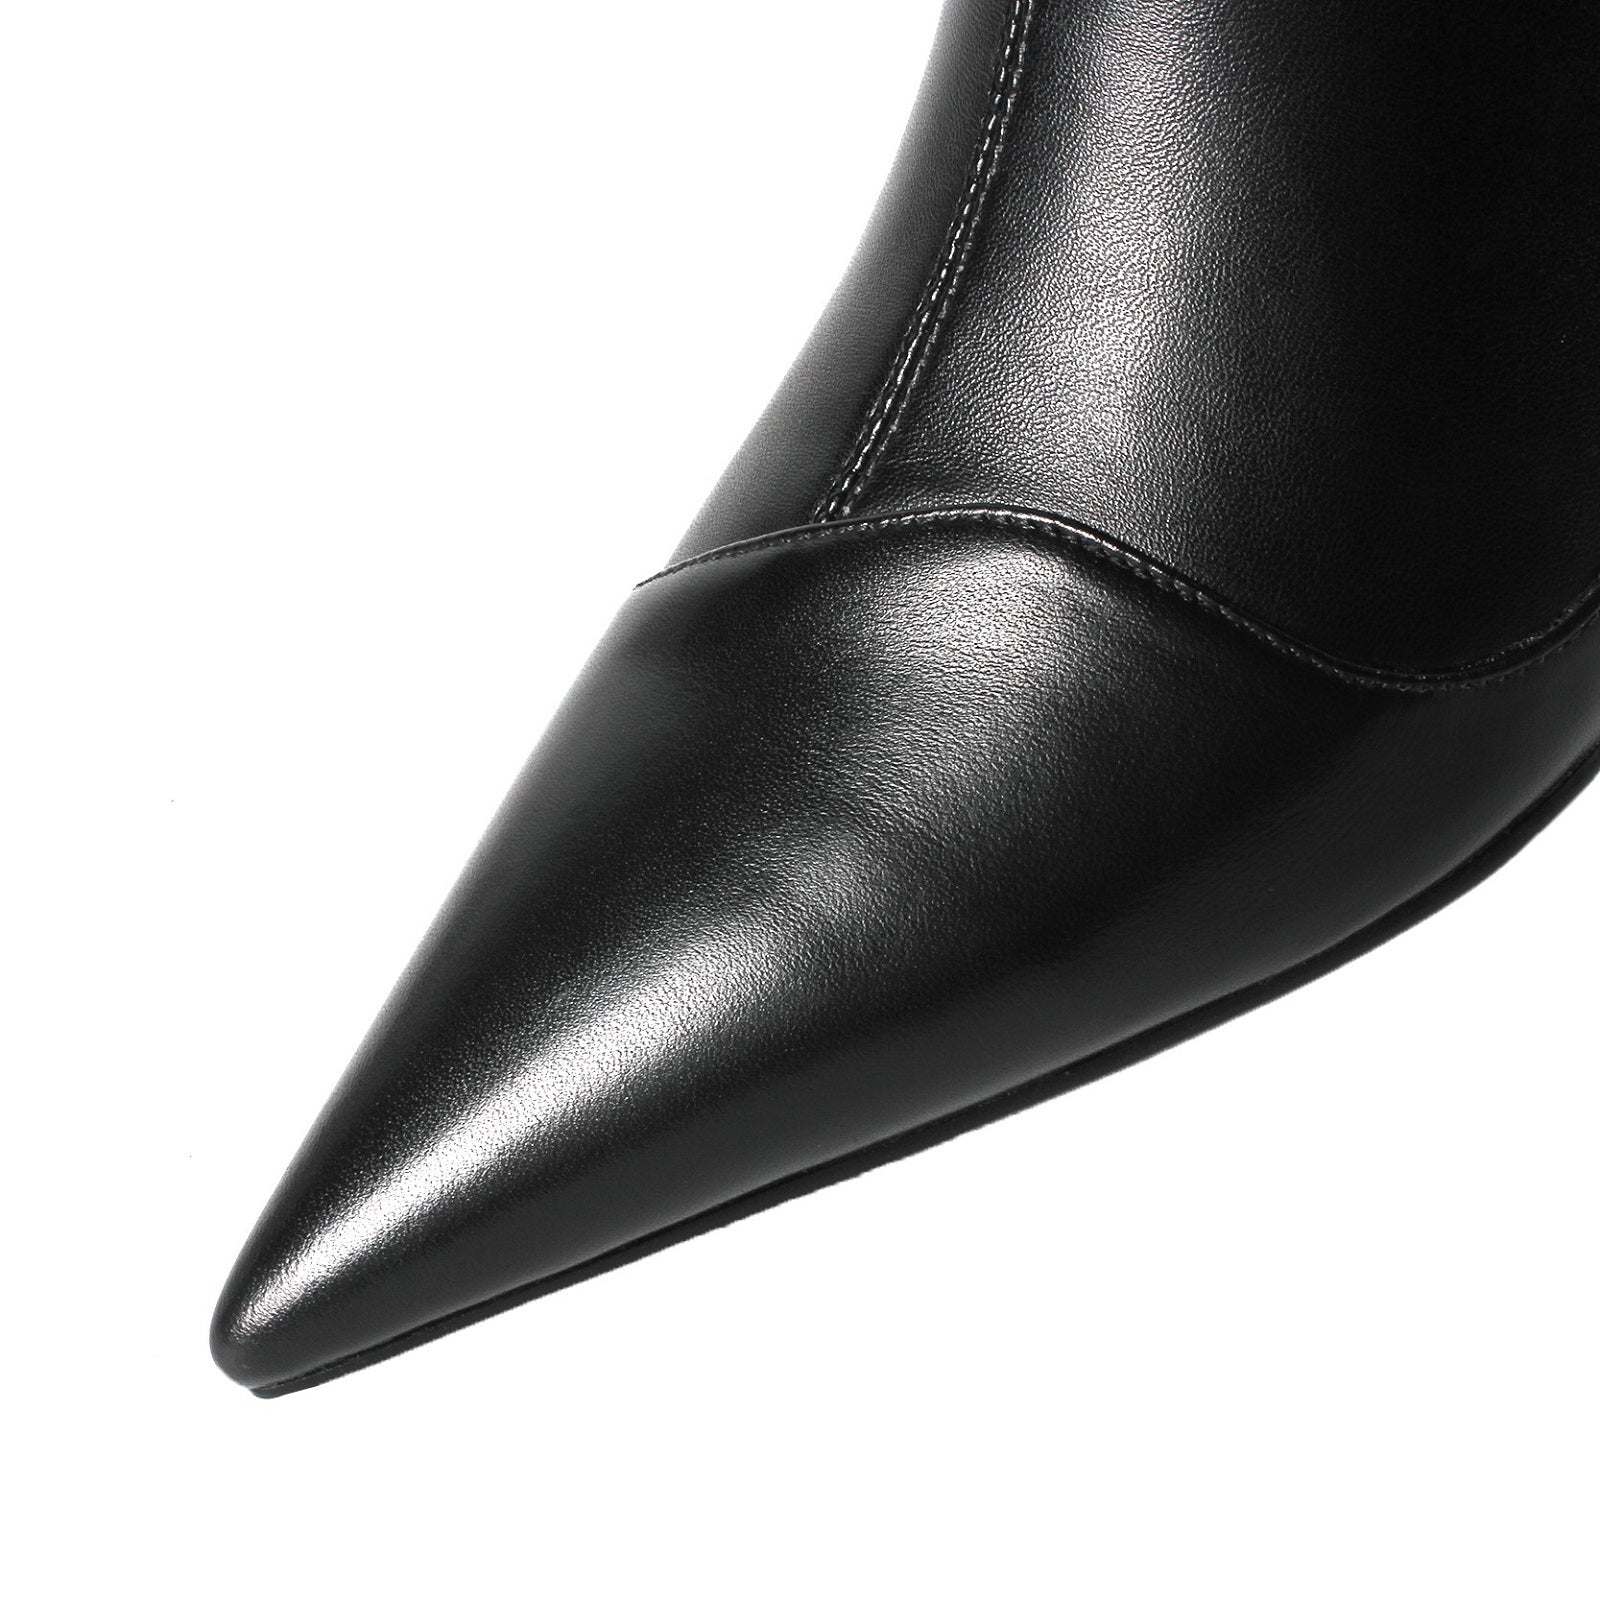 Kaly - Black Kitten Heel Ankle Boots – RolisaStyle